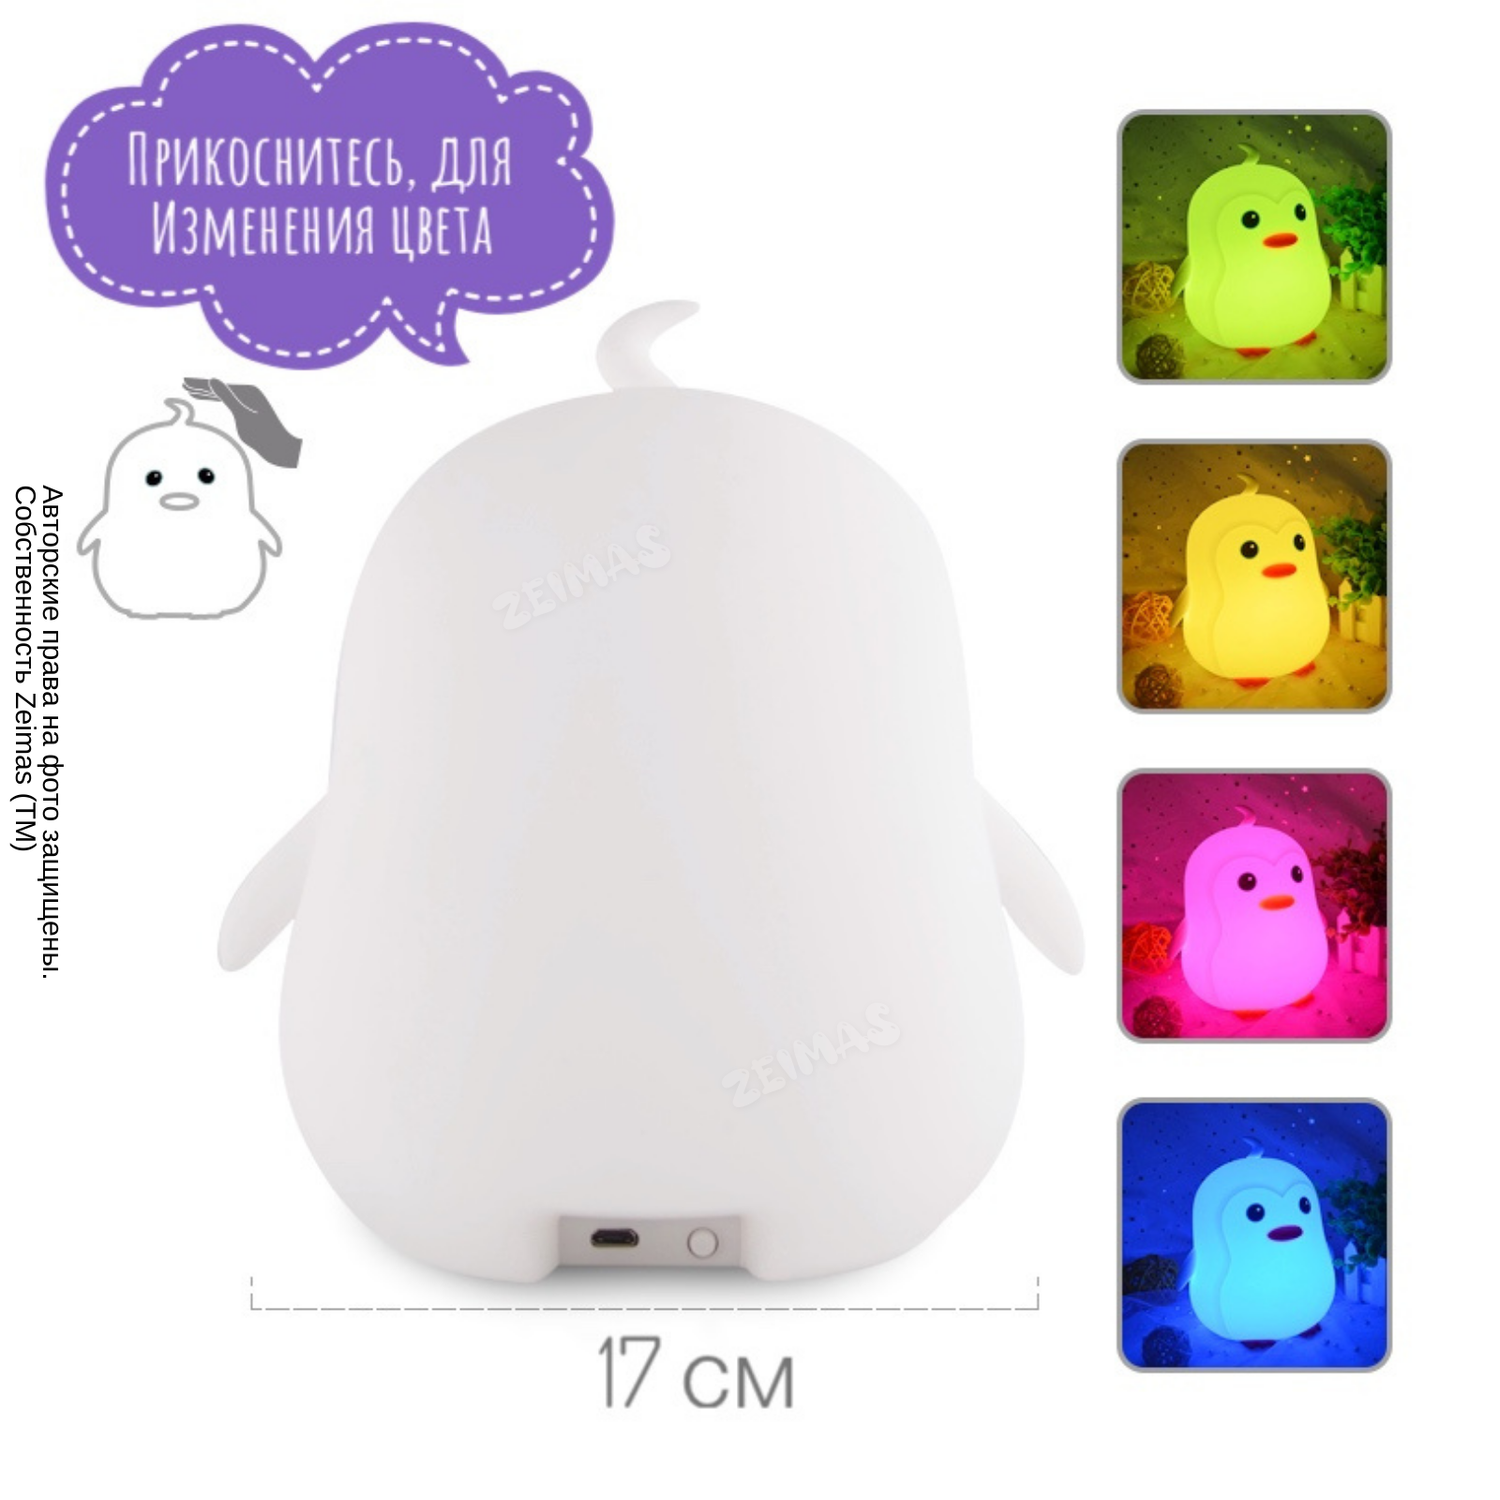 Ночник детский силиконовый Zeimas светильник игрушка Пингвин с пультом 9 цветов большой размер - фото 6